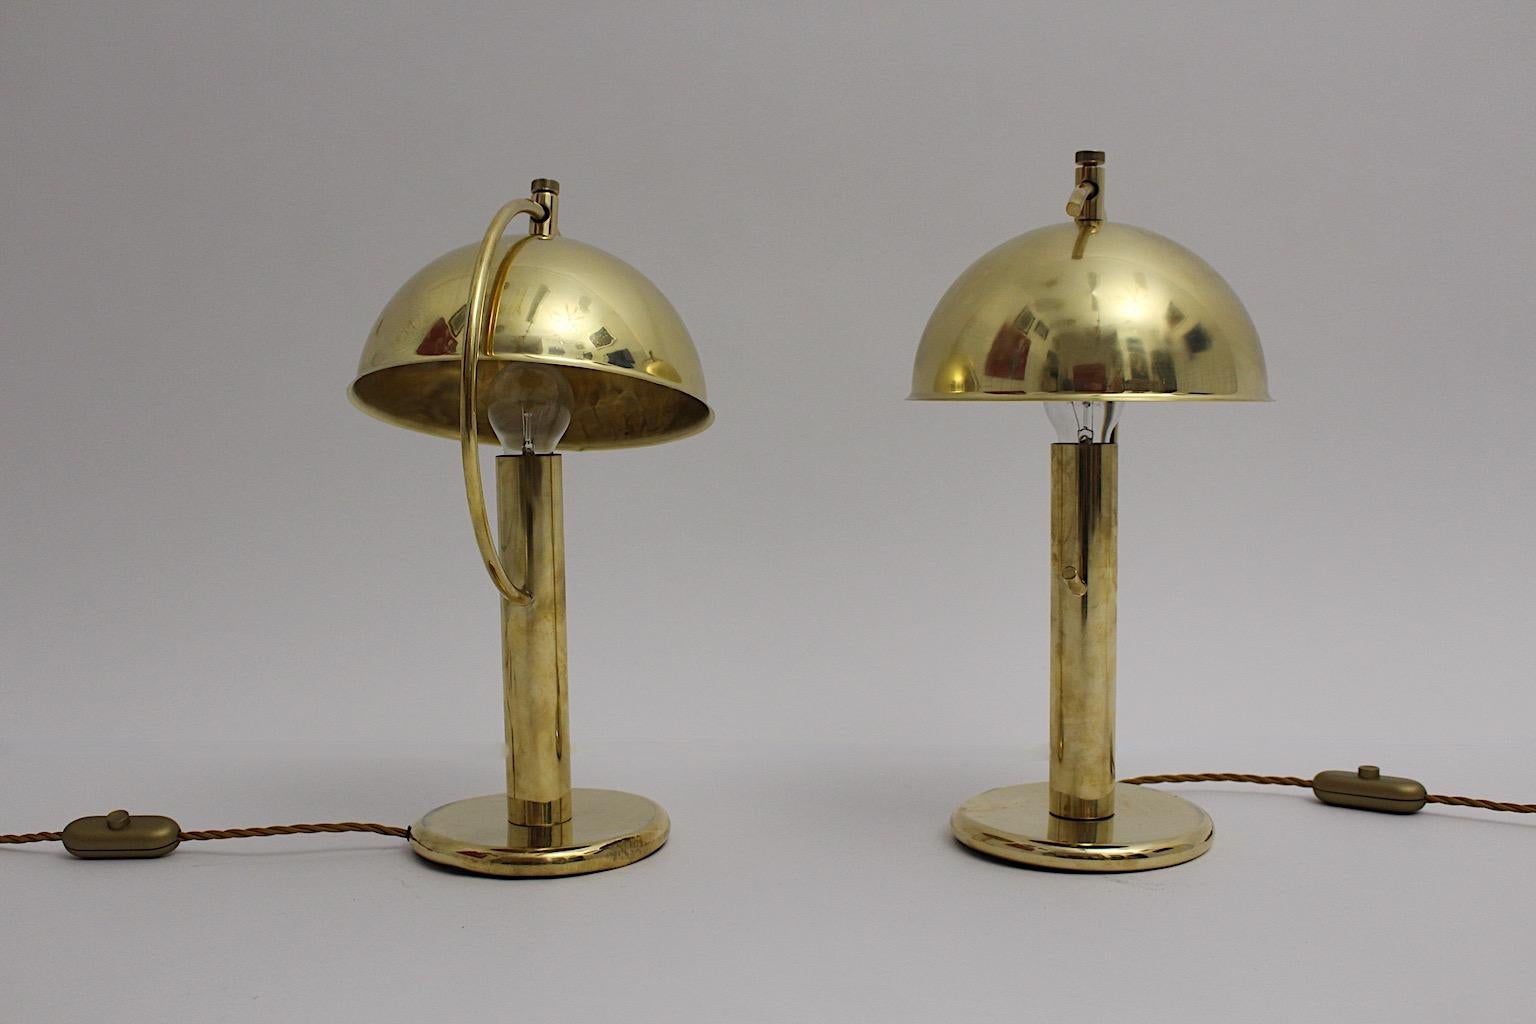 Art of Vintage lampes de table ou lampes de chevet en laiton duo paire champignon comme dans le style de Erik Tidstrand 1930s Suède.
Une belle paire de lampes de table en laiton avec un abat-jour réglable et pivotant en forme de champignon, tandis